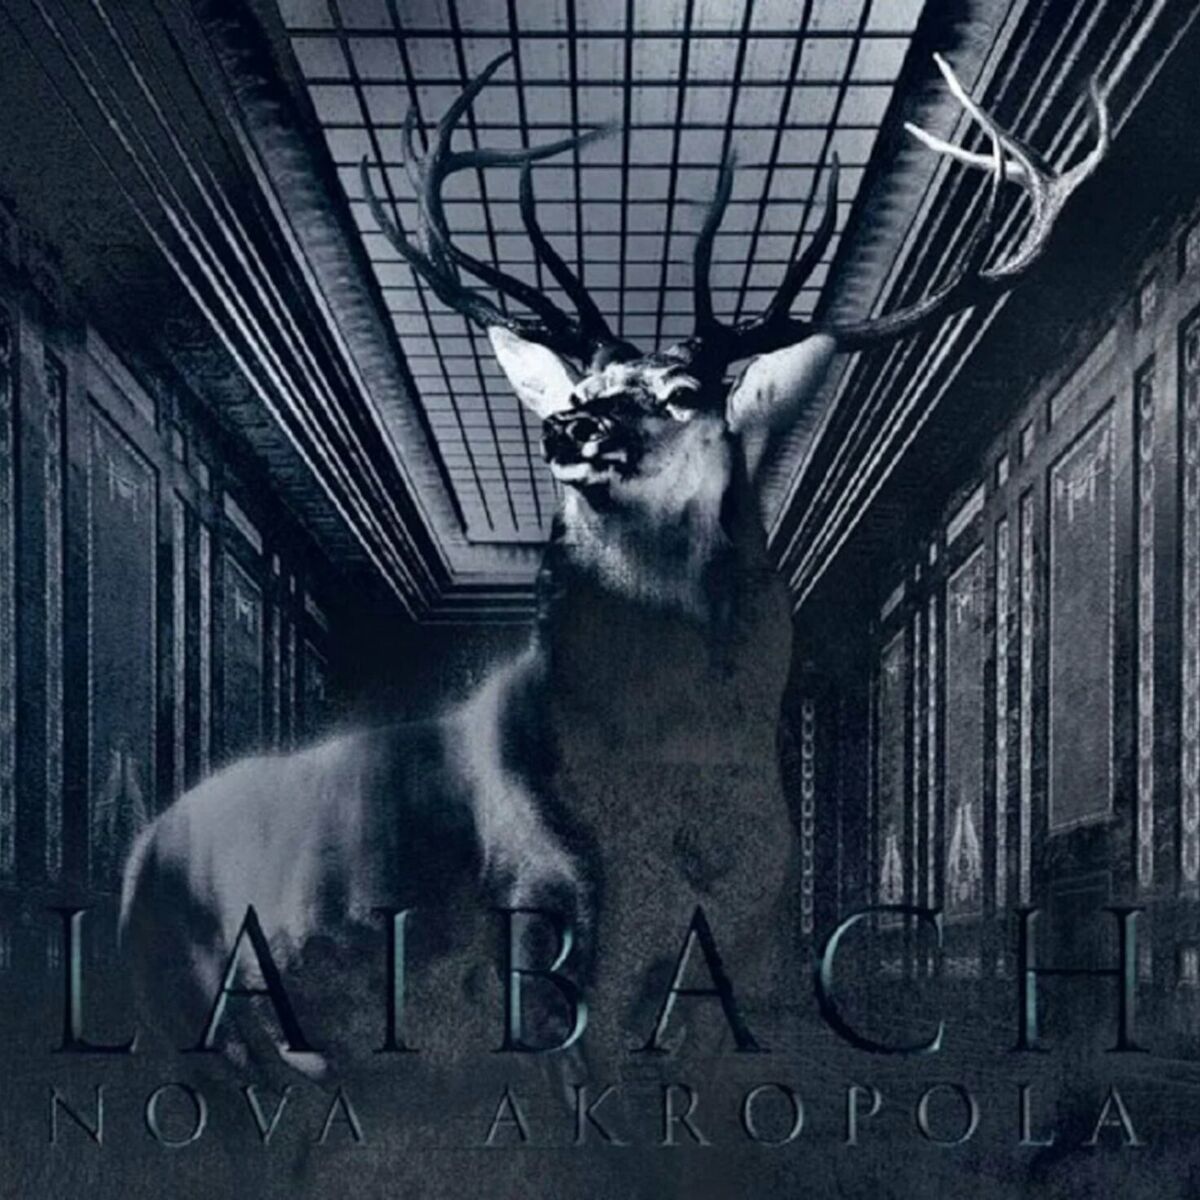 Laibach: albums